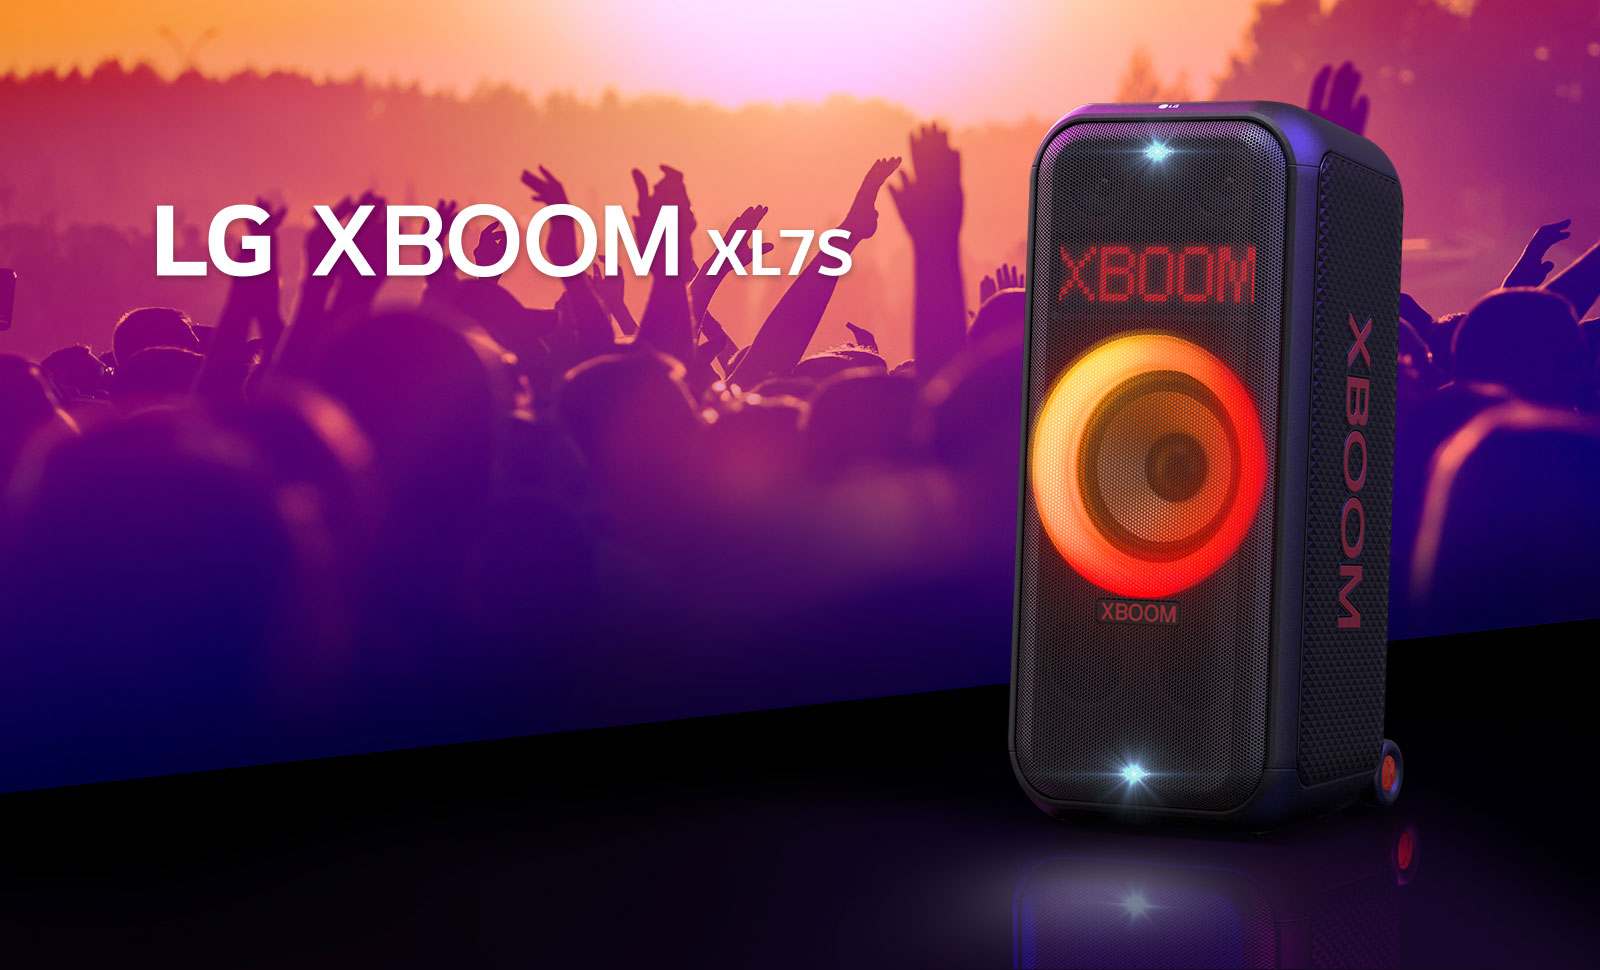 LG XBOOM XL7S được đặt trên sân khấu với đèn chuyển màu từ đỏ sang cam đang sáng. Phía sau sân khấu, mọi người đang thưởng thức âm nhạc.